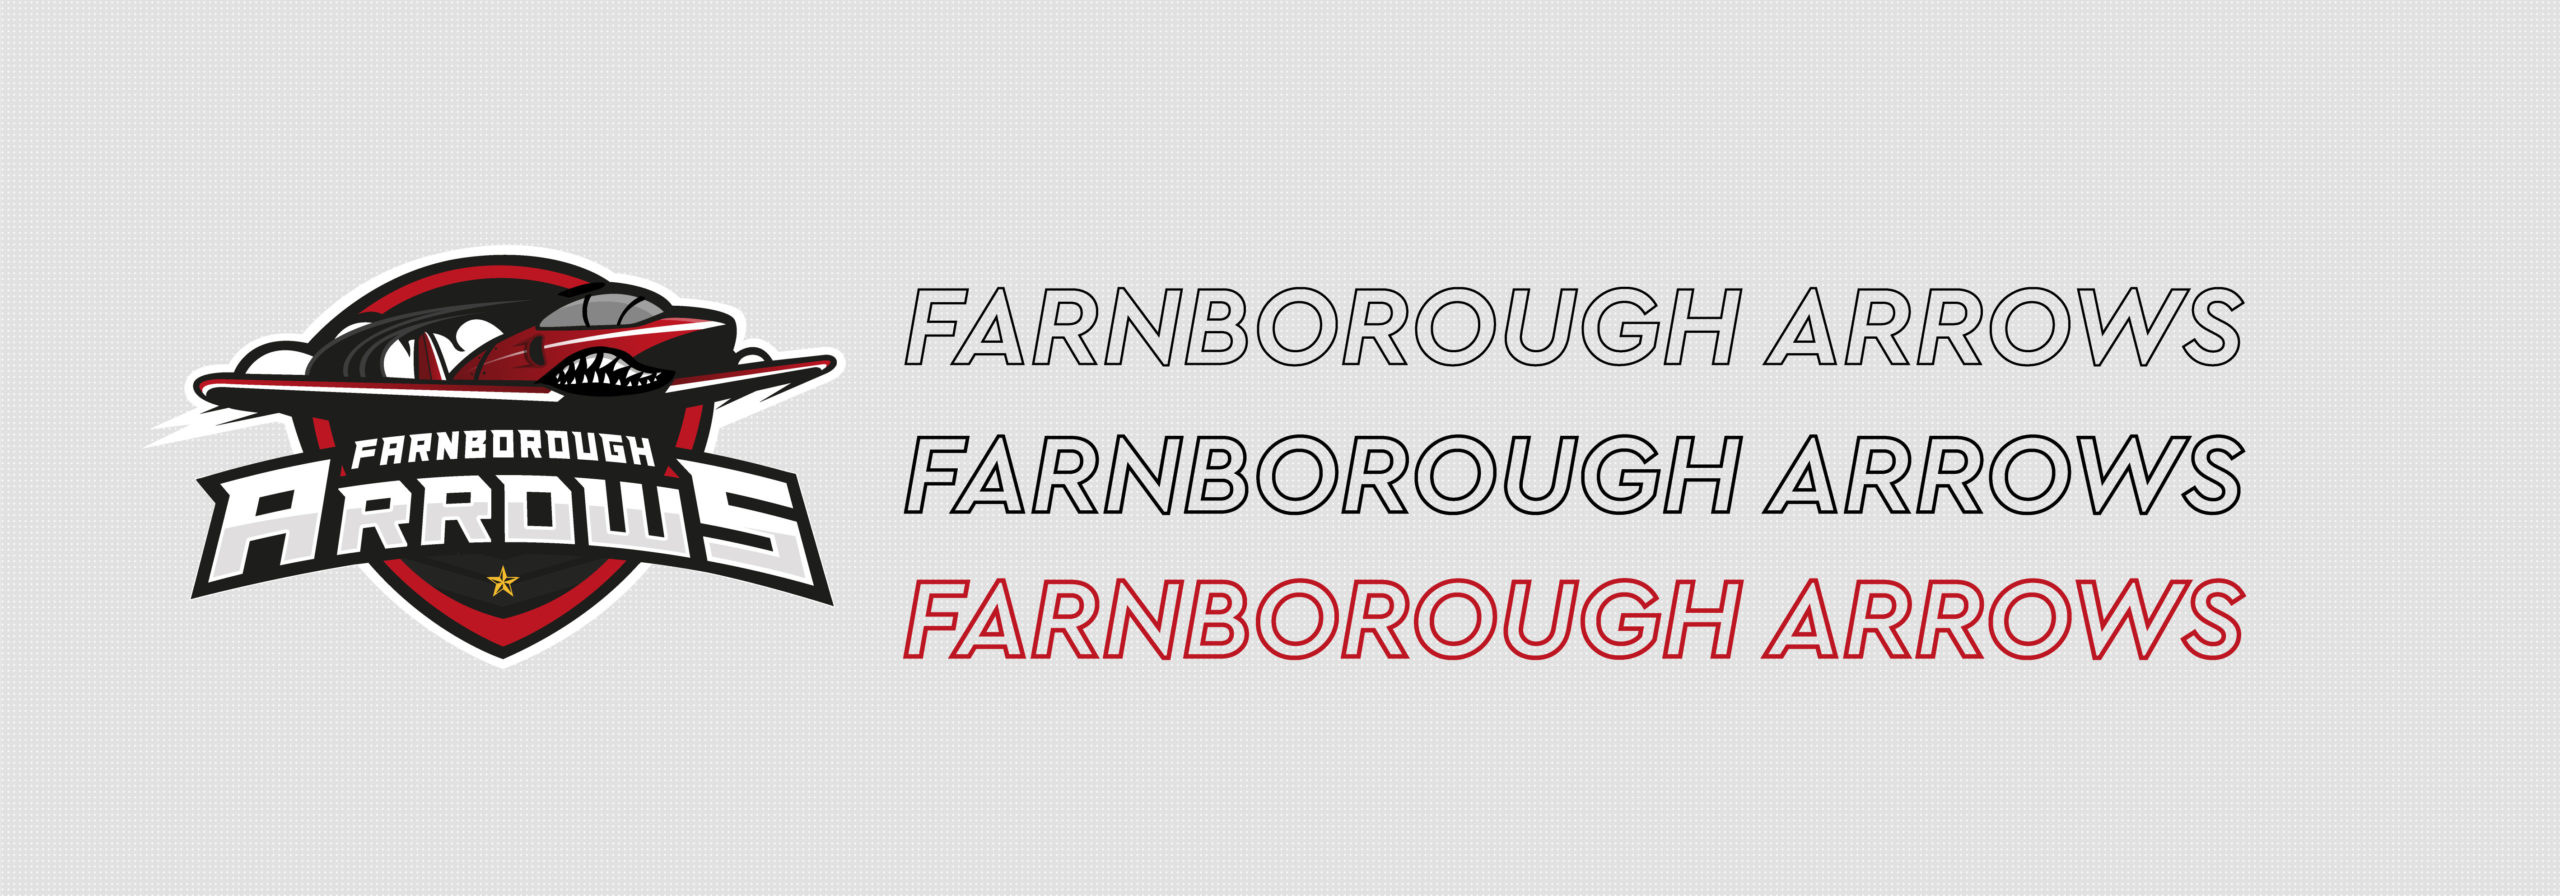 Farnborough Arrows Equipment Bag